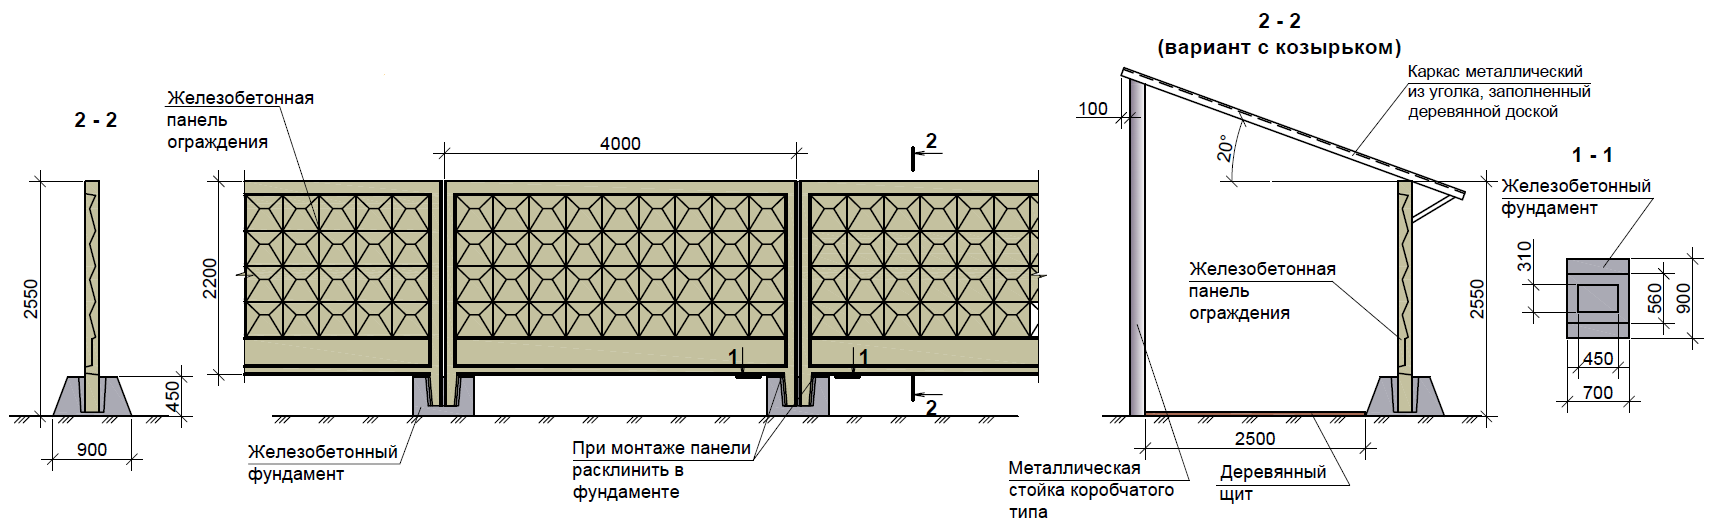 Заборы из блоков своими руками: пошаговая технология возведения декоративных бетонных блоков для столбов и строительства забора